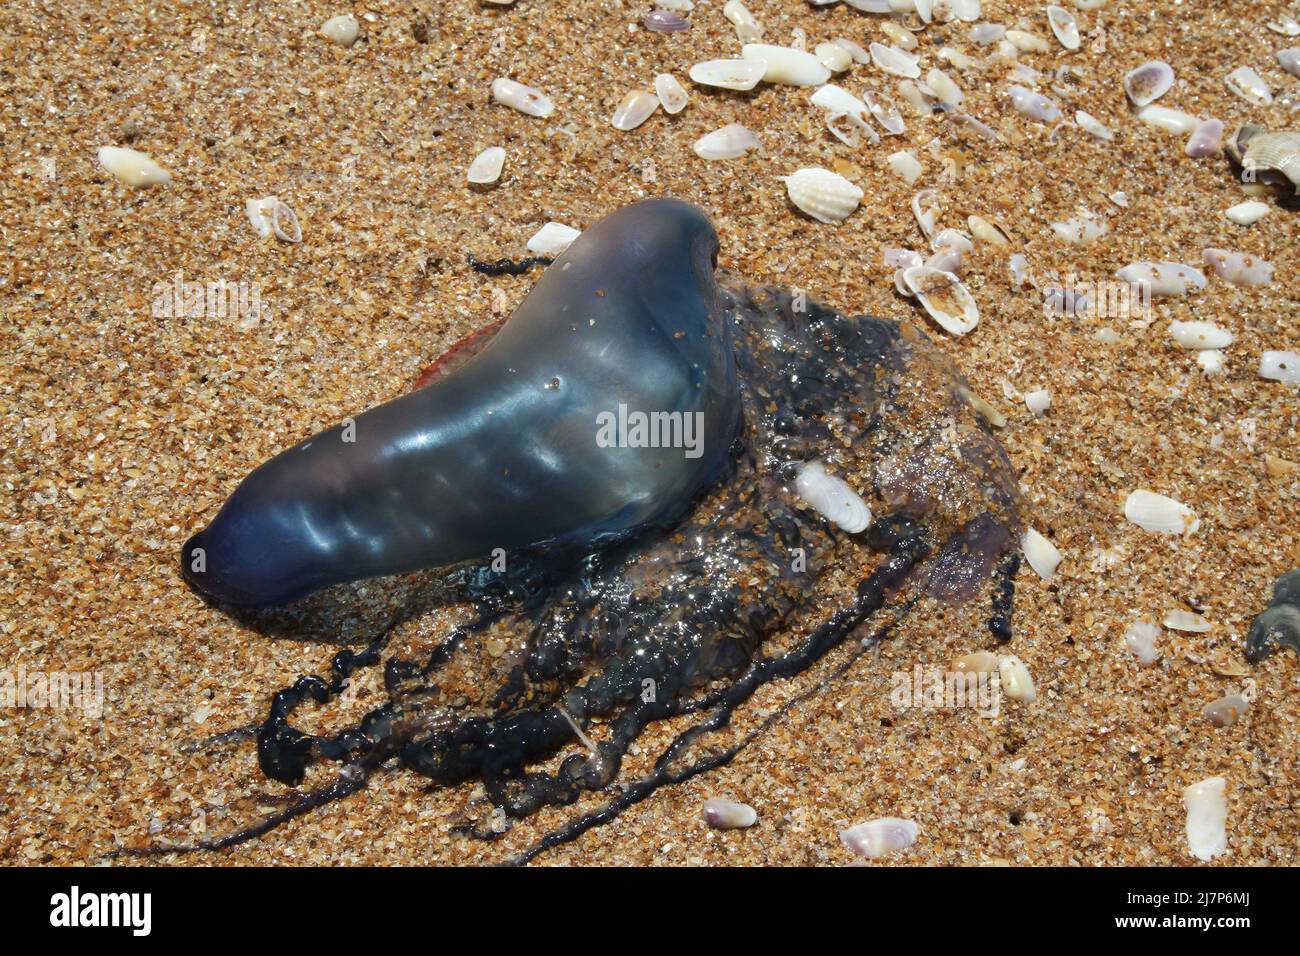 Giftige Tentakeln neben gefährlichen Blaubottchen portugiesischen Mann o Krieg Quallen Tier auf Sand Strand Bilder Stockfoto